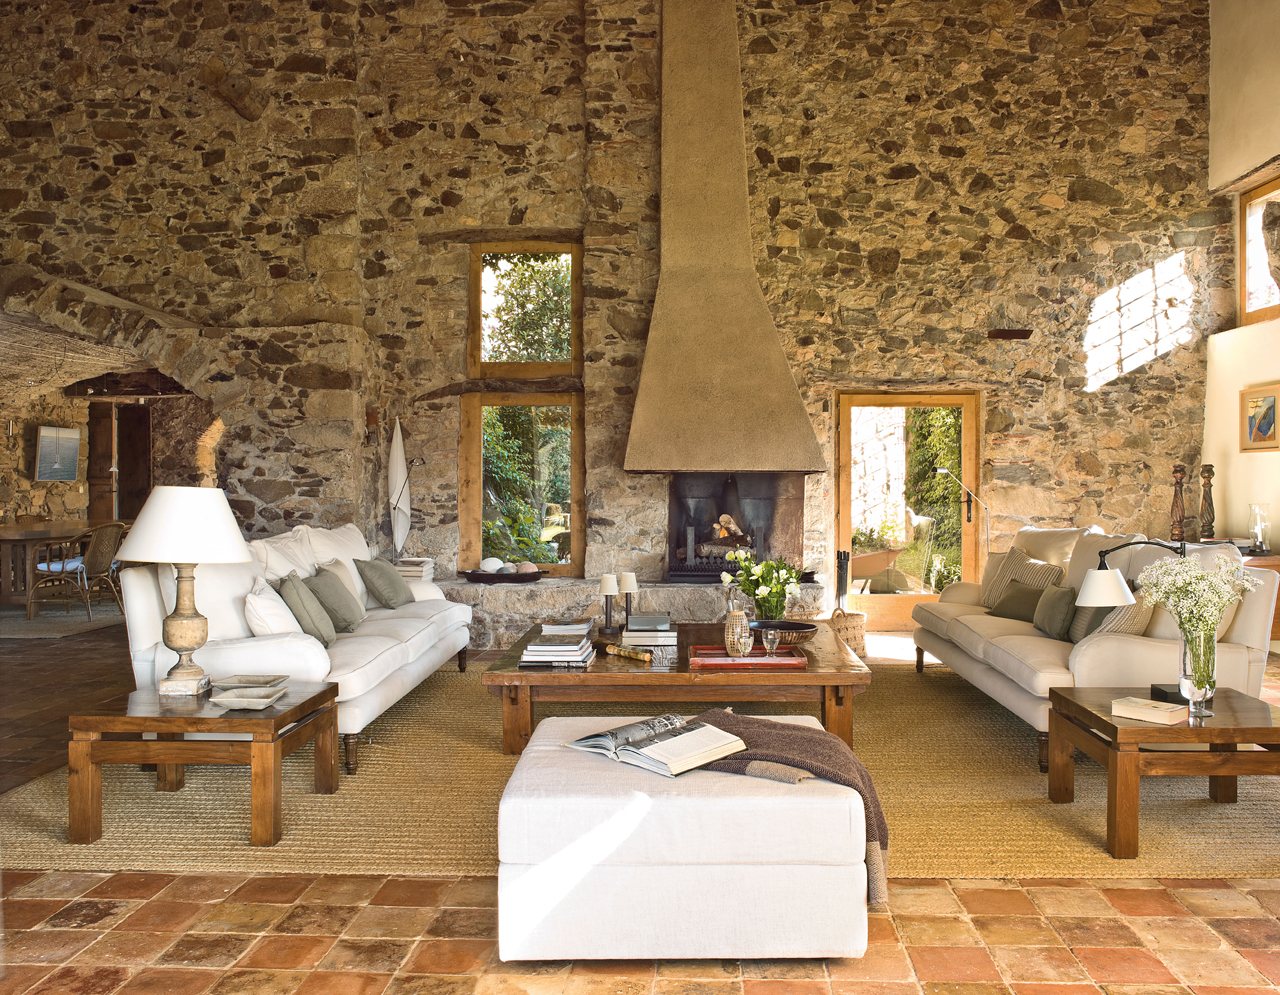 Salón de estilo rústico con paredes de piedra, chimenea y sofás blancos.